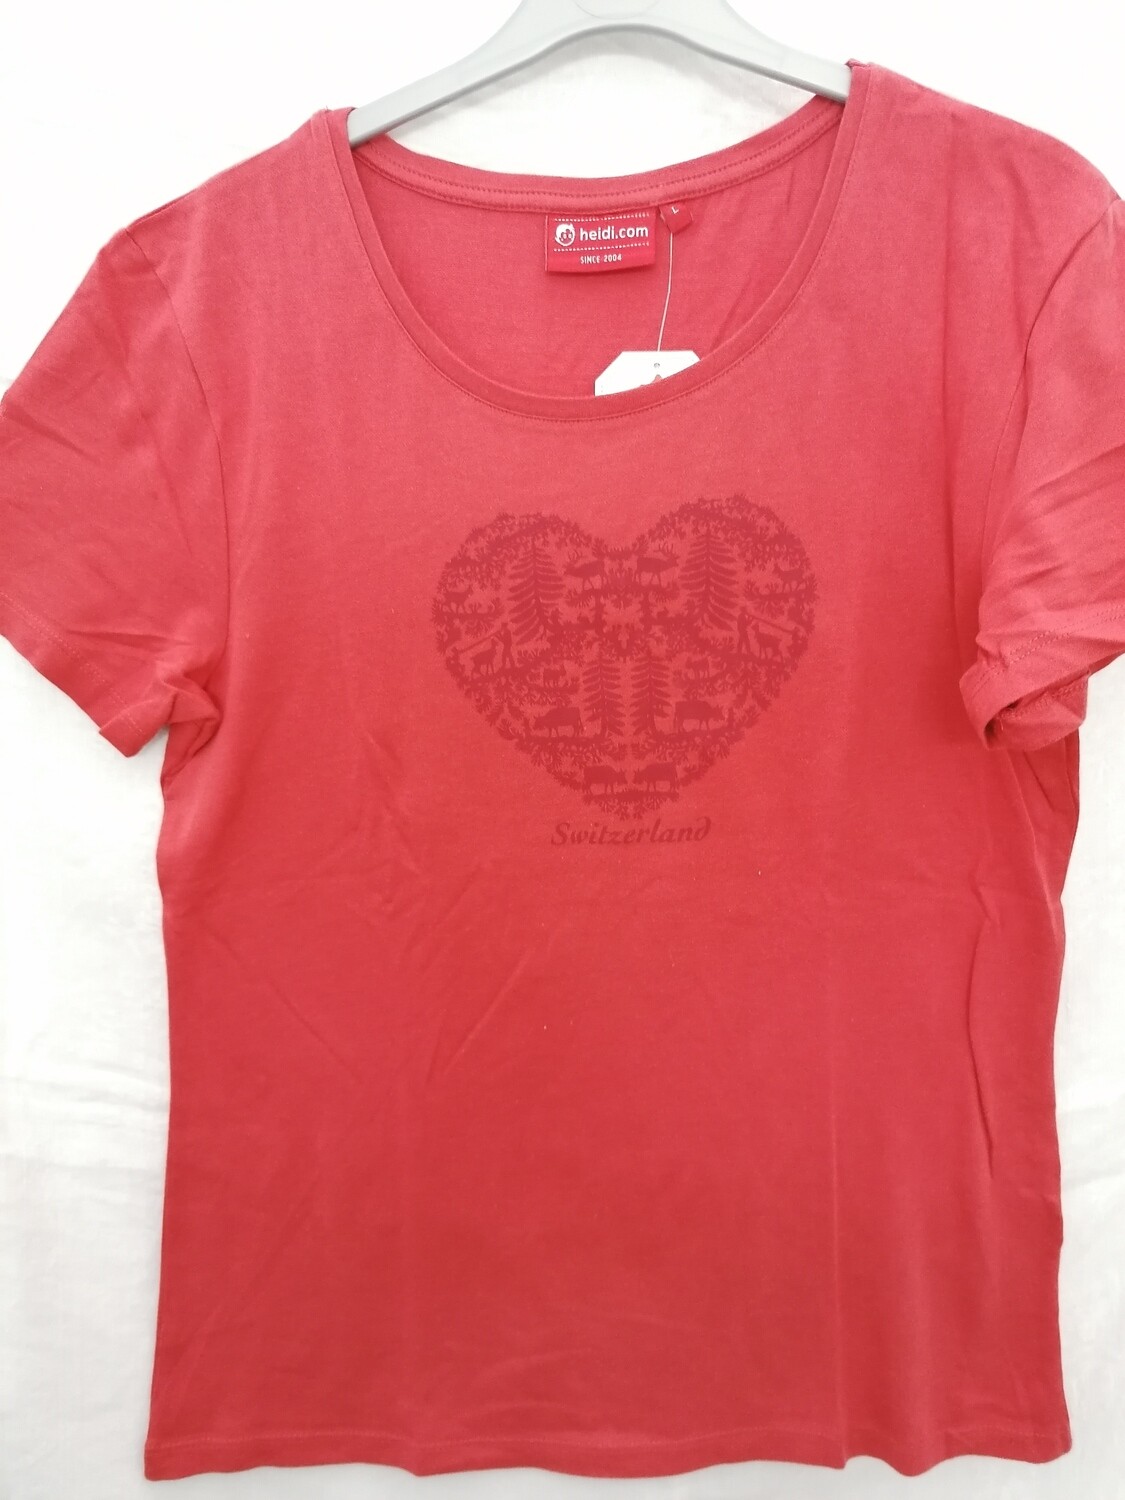 Tee shirt rouge avec coeur en découpage Switzerland pour femme